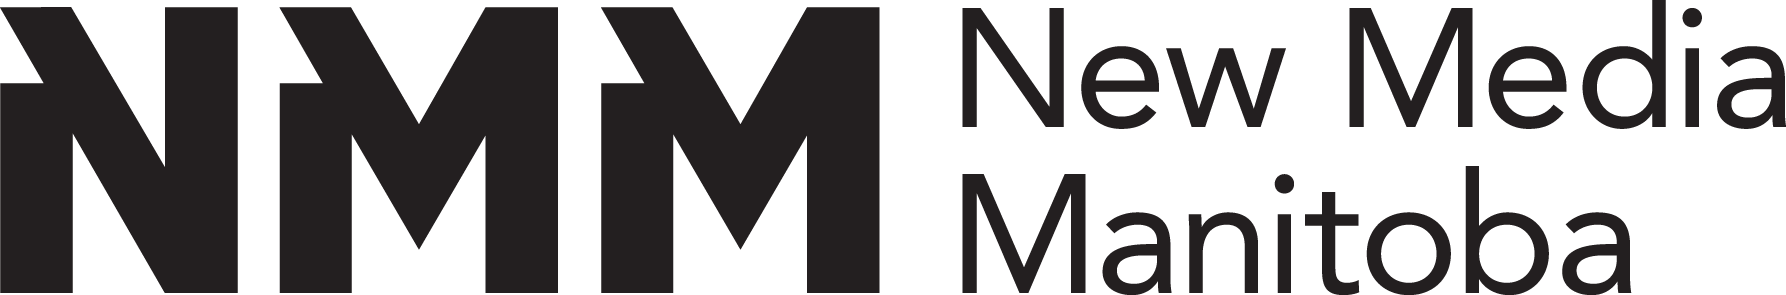 NEW MEDIA MANITOBA-thumbnail_nmm-logo-black.png